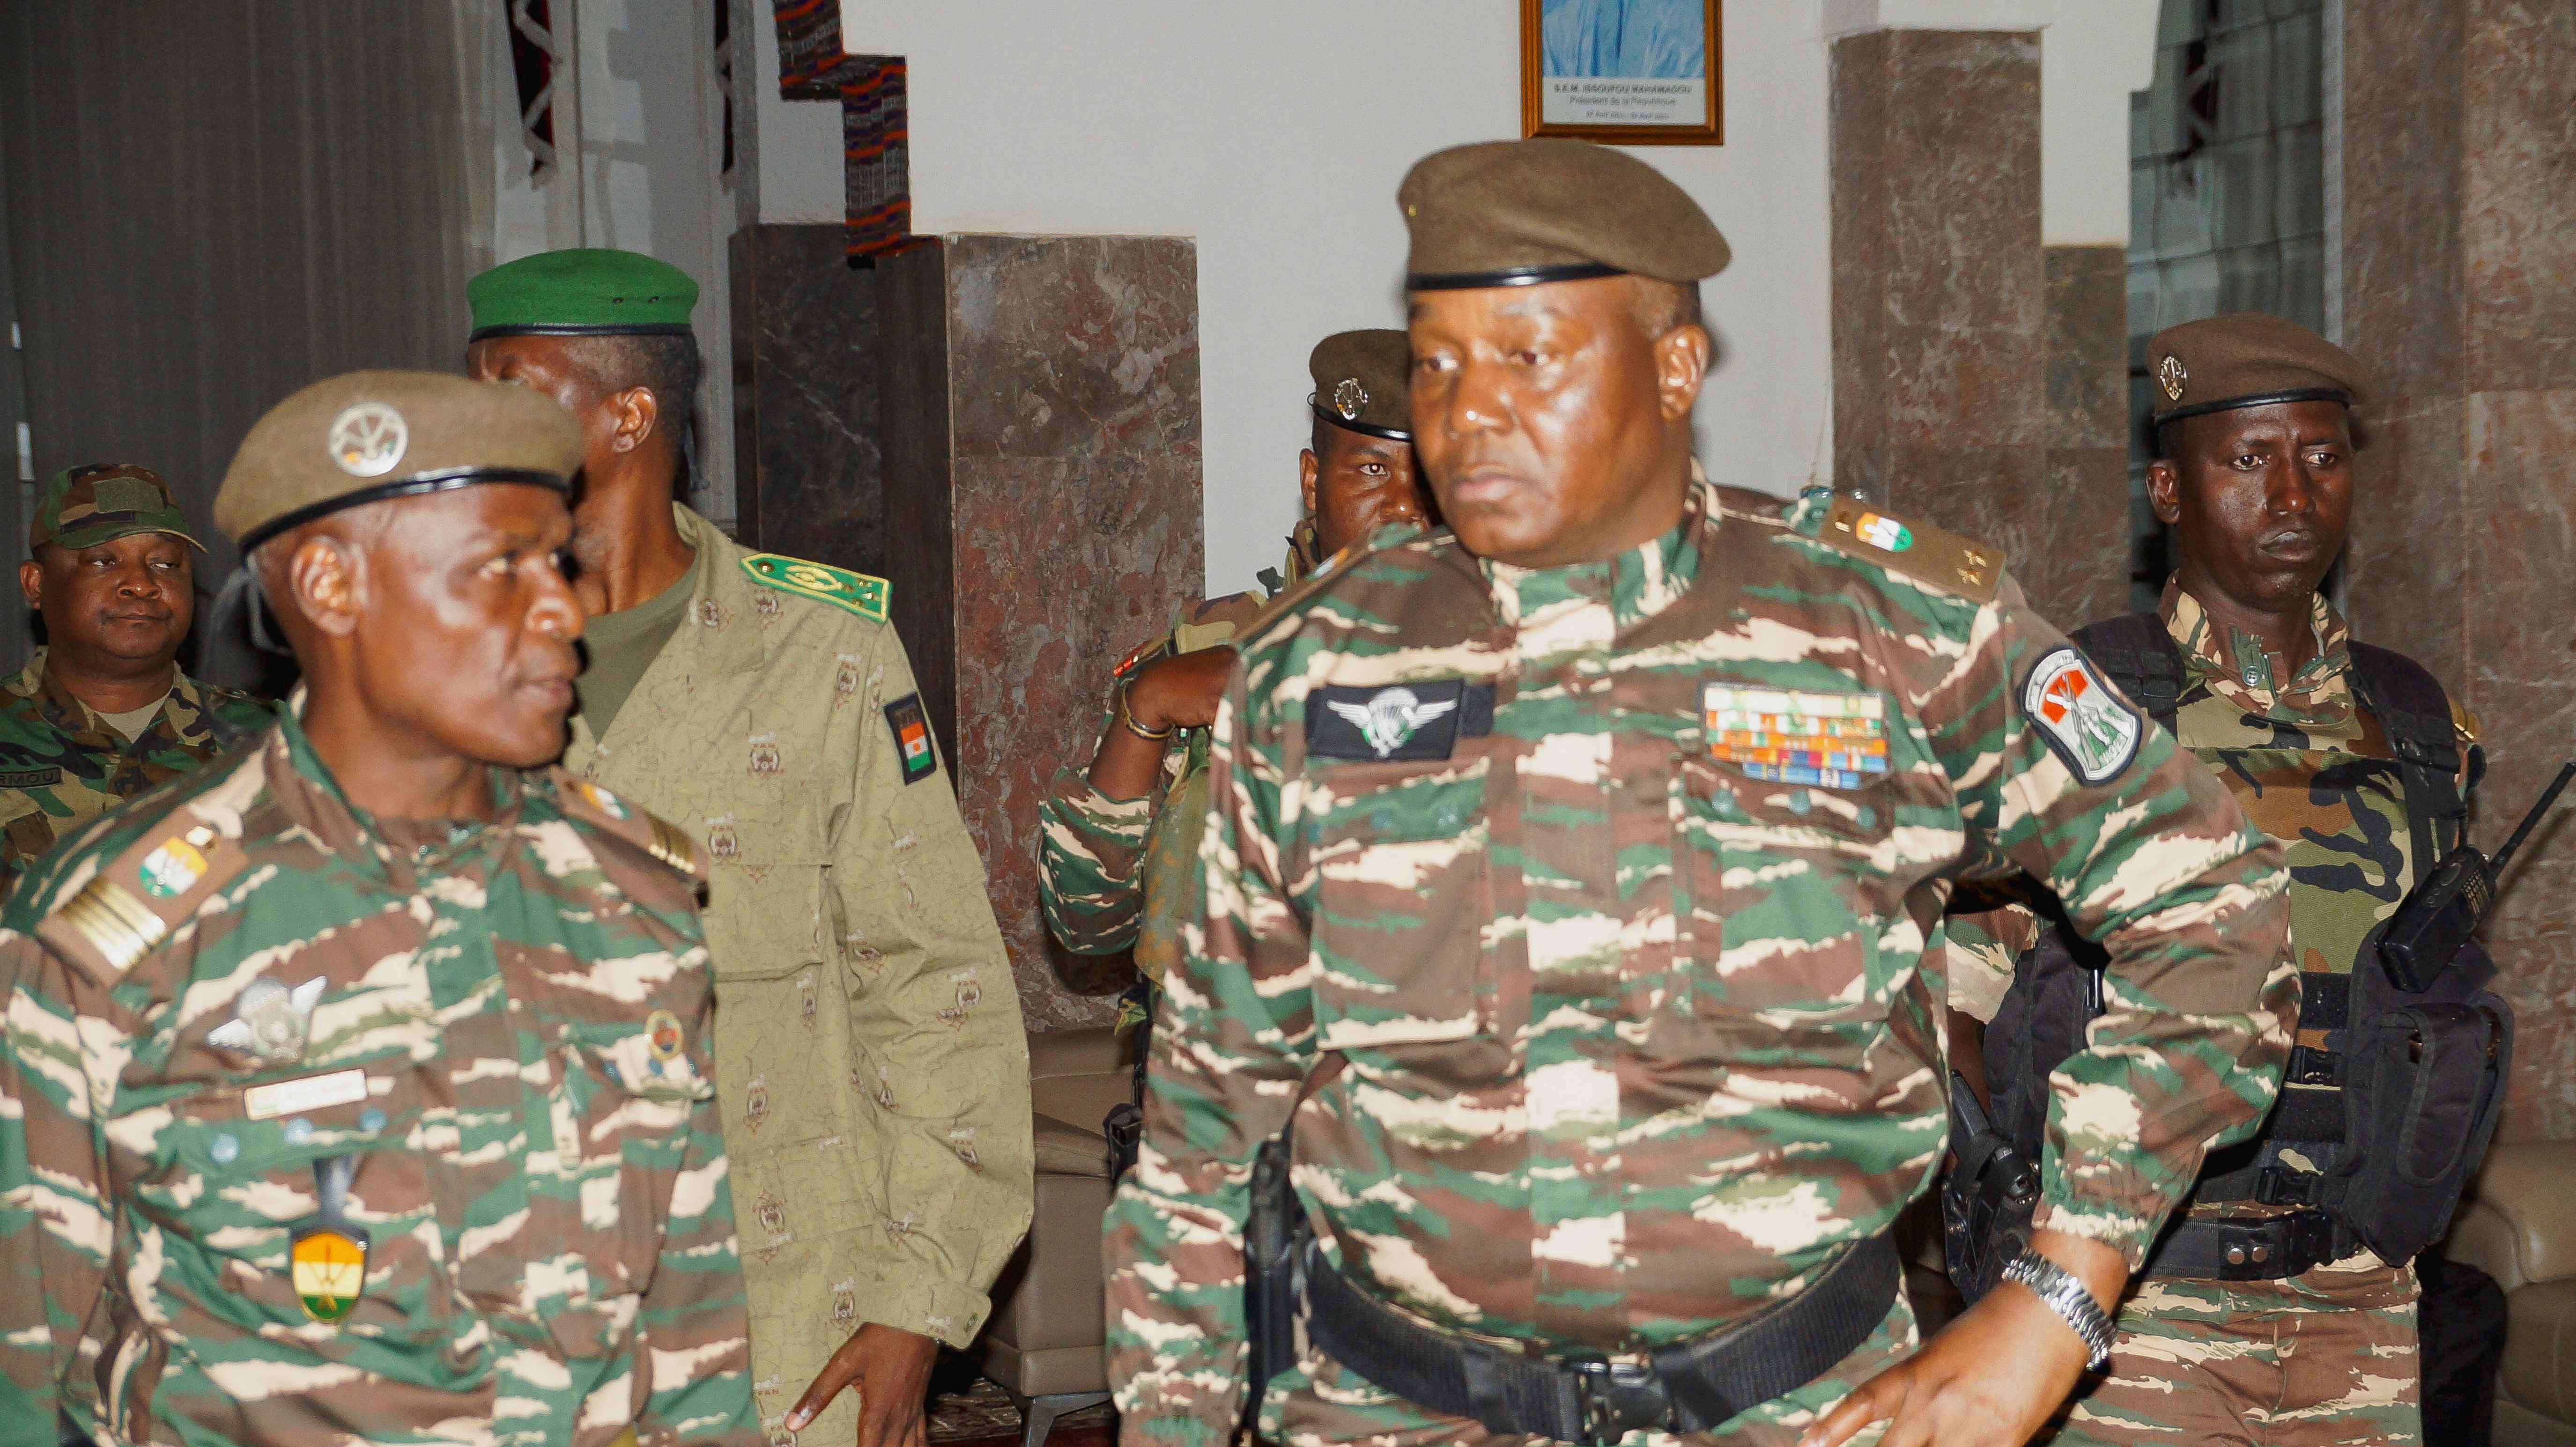 6PLUGPQ75RJYXADO5QGNKPXH4A Quem é o novo presidente do Níger, Abdourahamane Tiani?